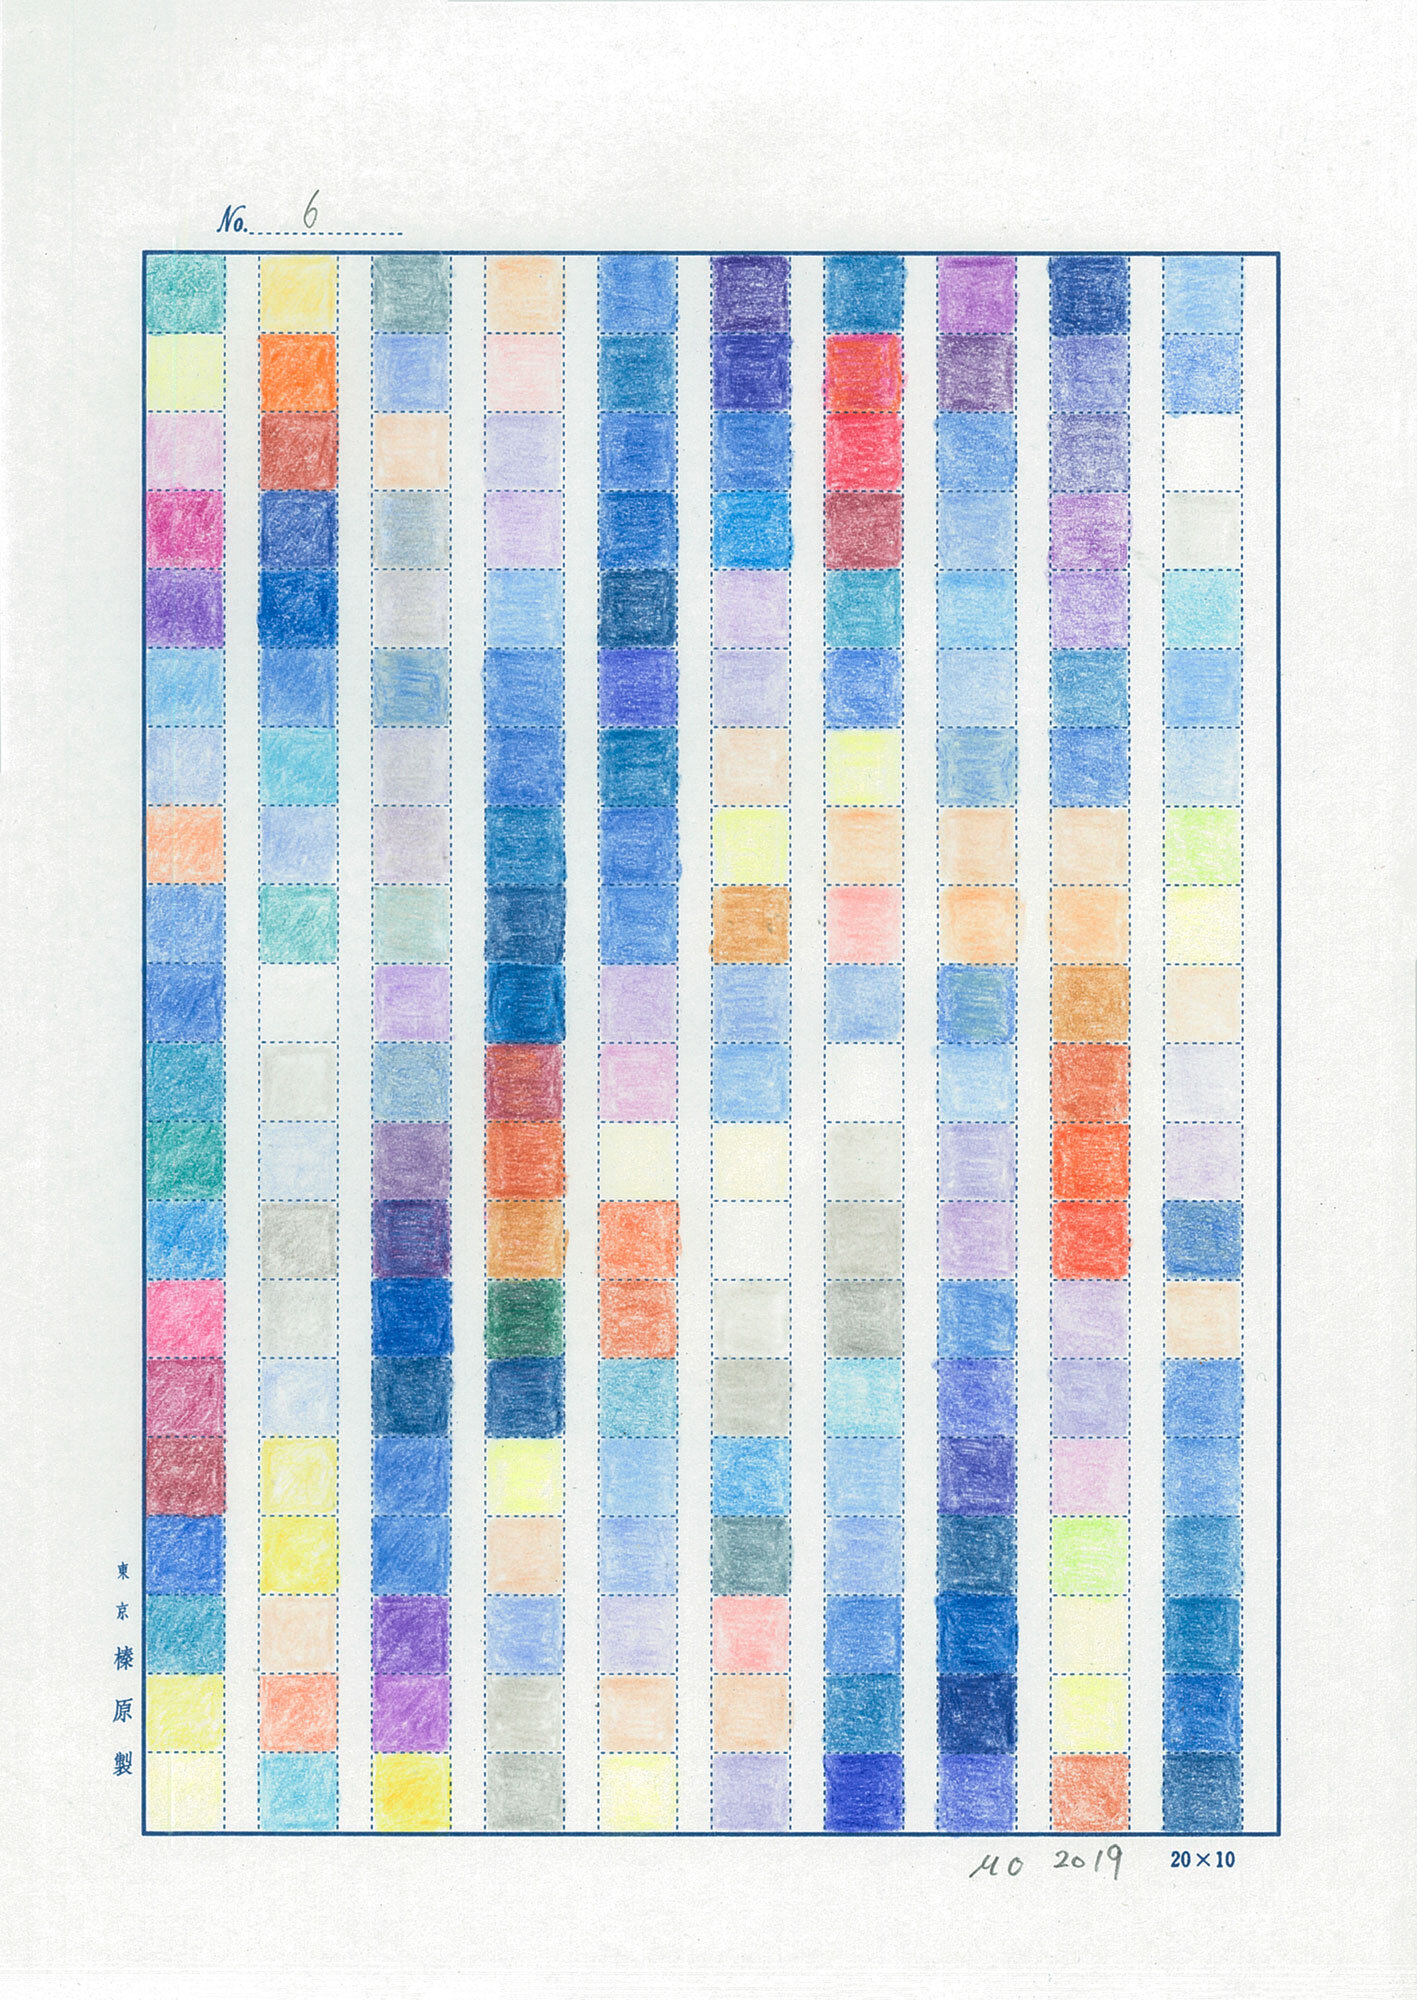    日日是好日   (No.6, 1983-2019, an ongoing project), color pencil on manuscript paper and international mail, 9-49/64” x 6-15/16” (24.8 cm x 17.6 cm), sent to New York NY, USA from Hiroshima JAPAN 